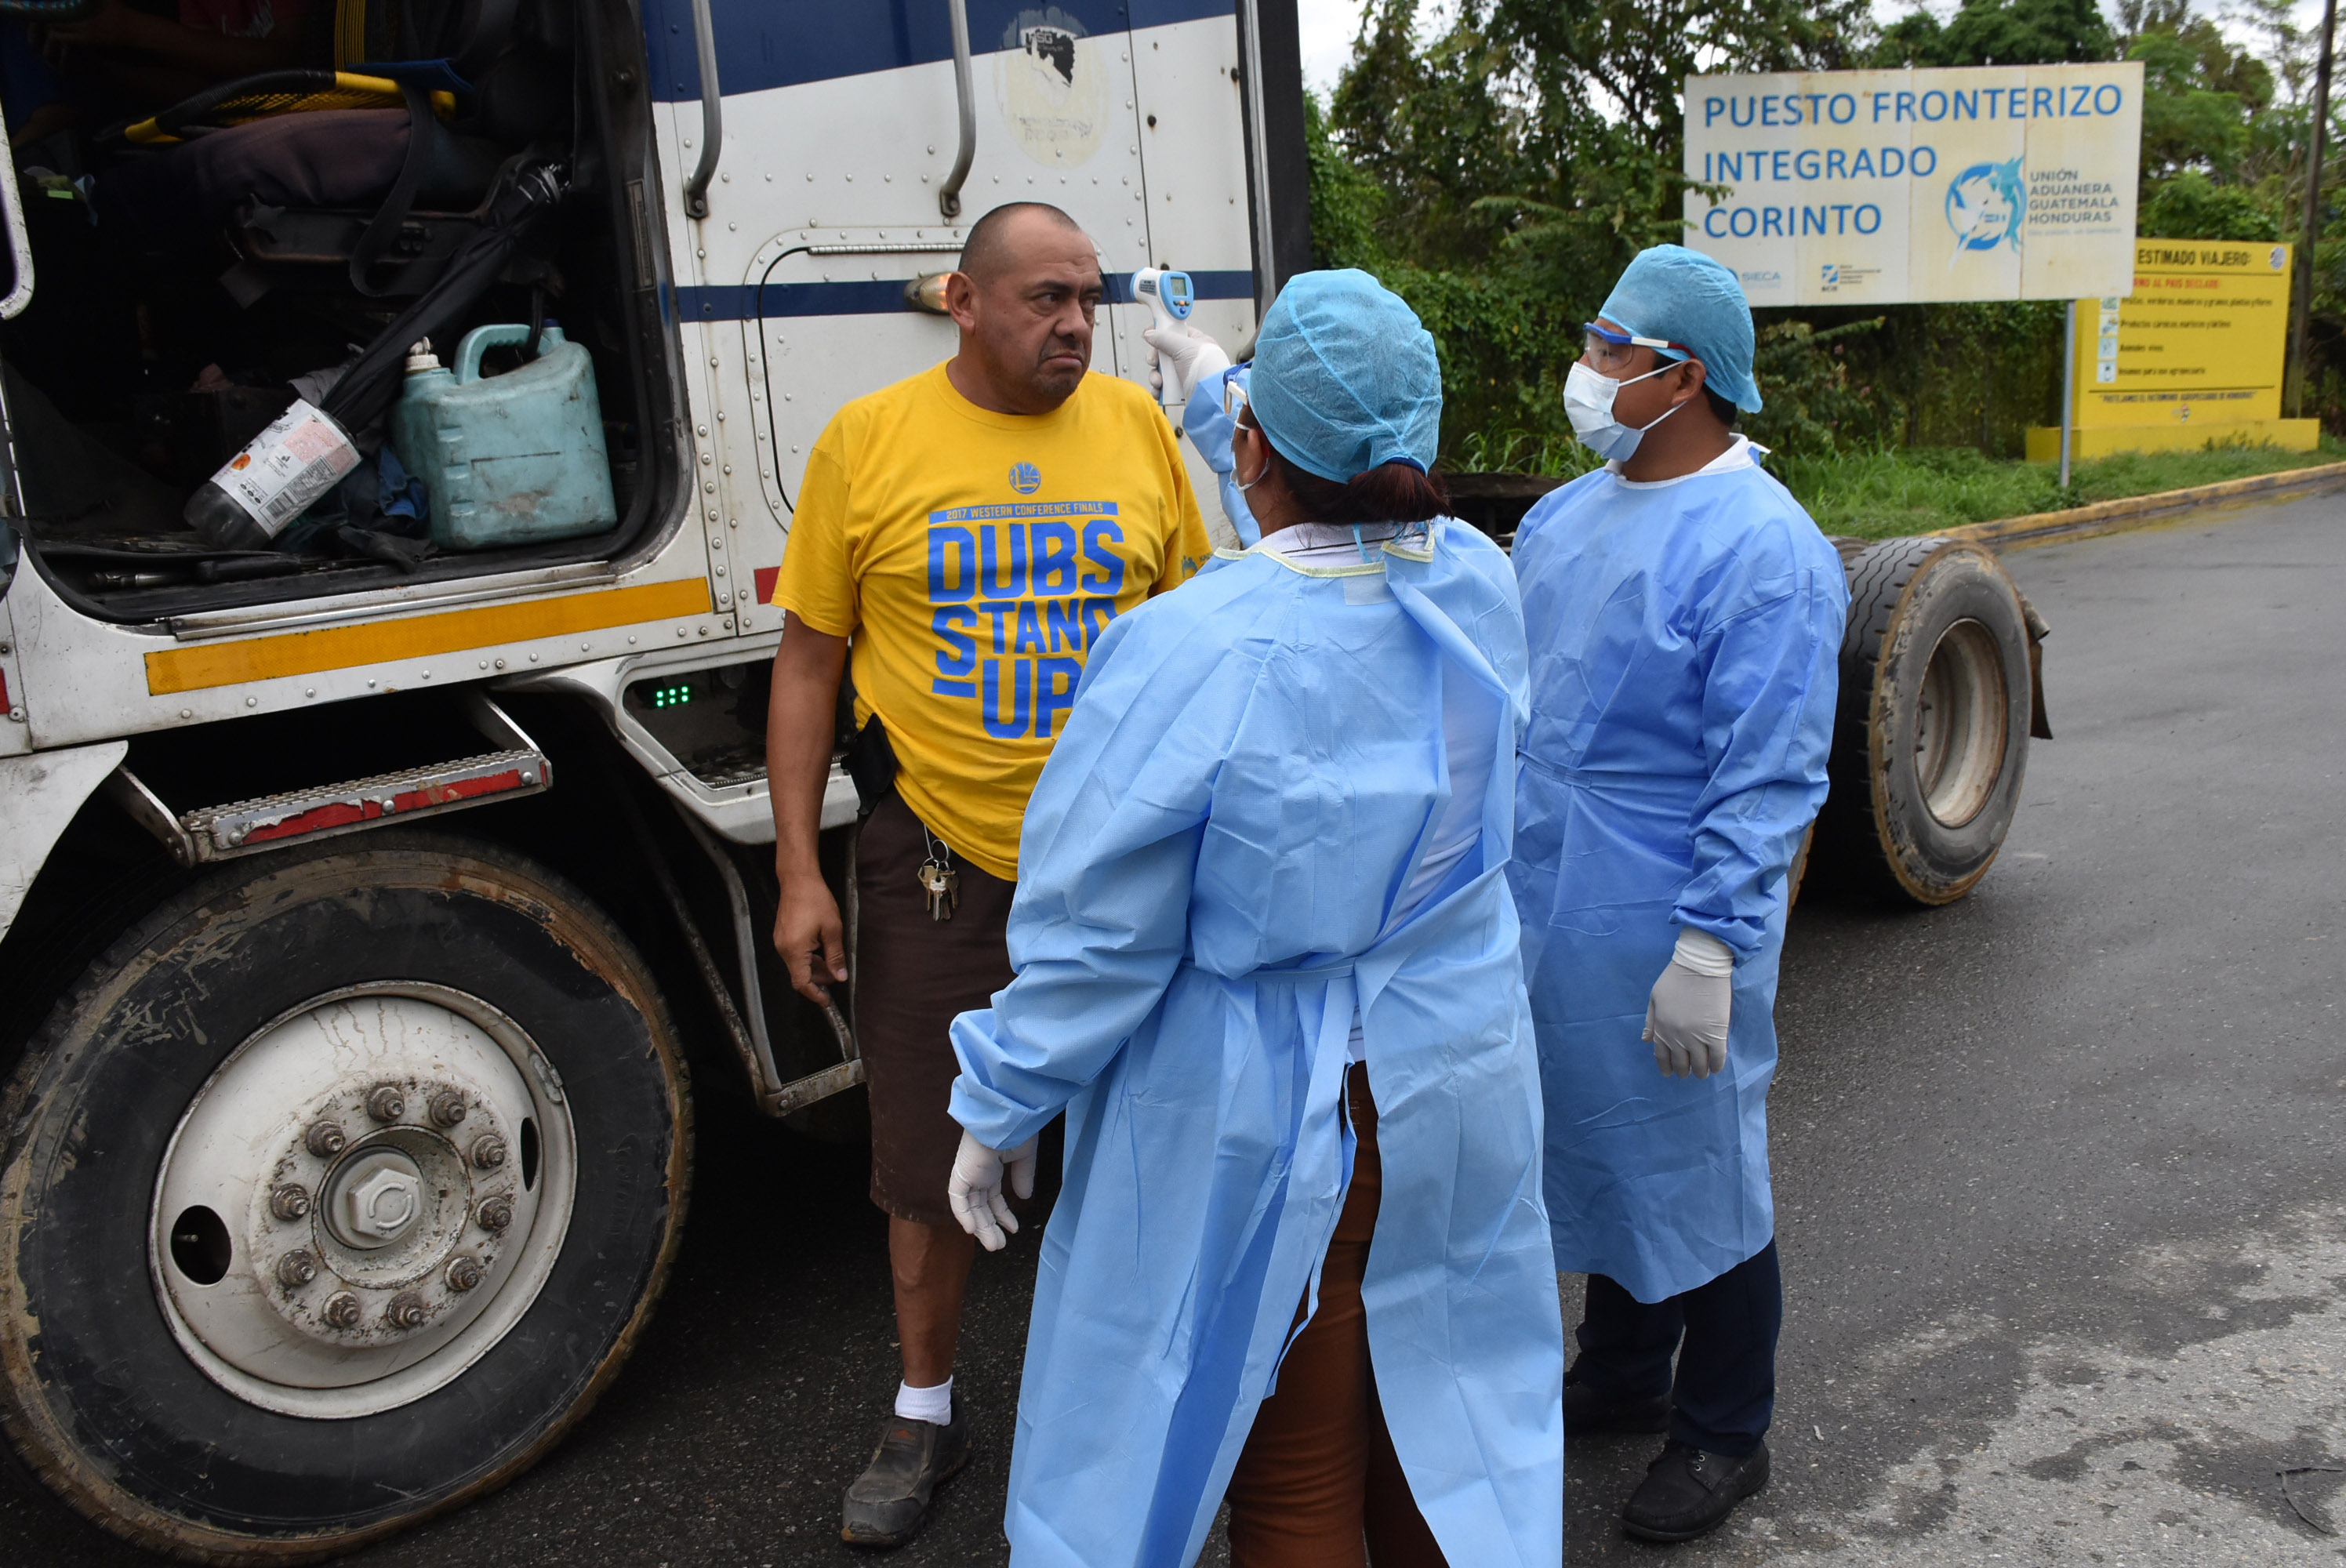 Un piloto de transporte de carga se pone a disposición para una muestra de temperatura por parte de enfermeros del área de Salud de Izabal, en la frontera de El Corinto, entre Guatemala y Honduras. (Foto Prensa Libre: Dony Stewart)